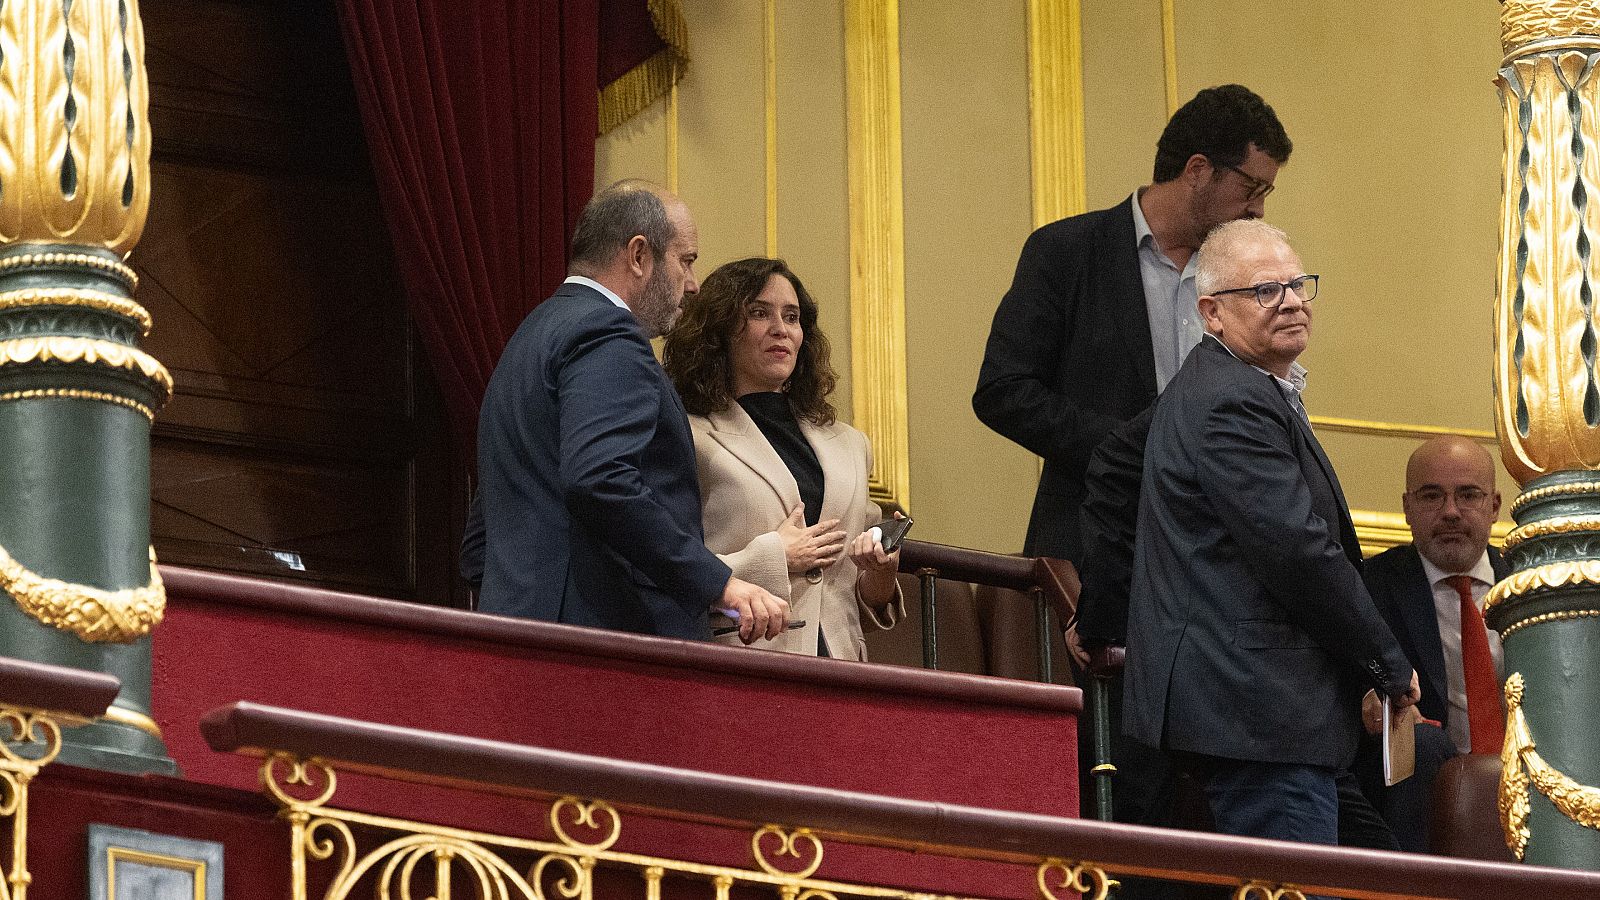 La presidenta de la Comunidad de Madrid, Isabel Díaz Ayuso, en la tribuna durante la primera sesión del debate de investidura de Pedro Sánchez